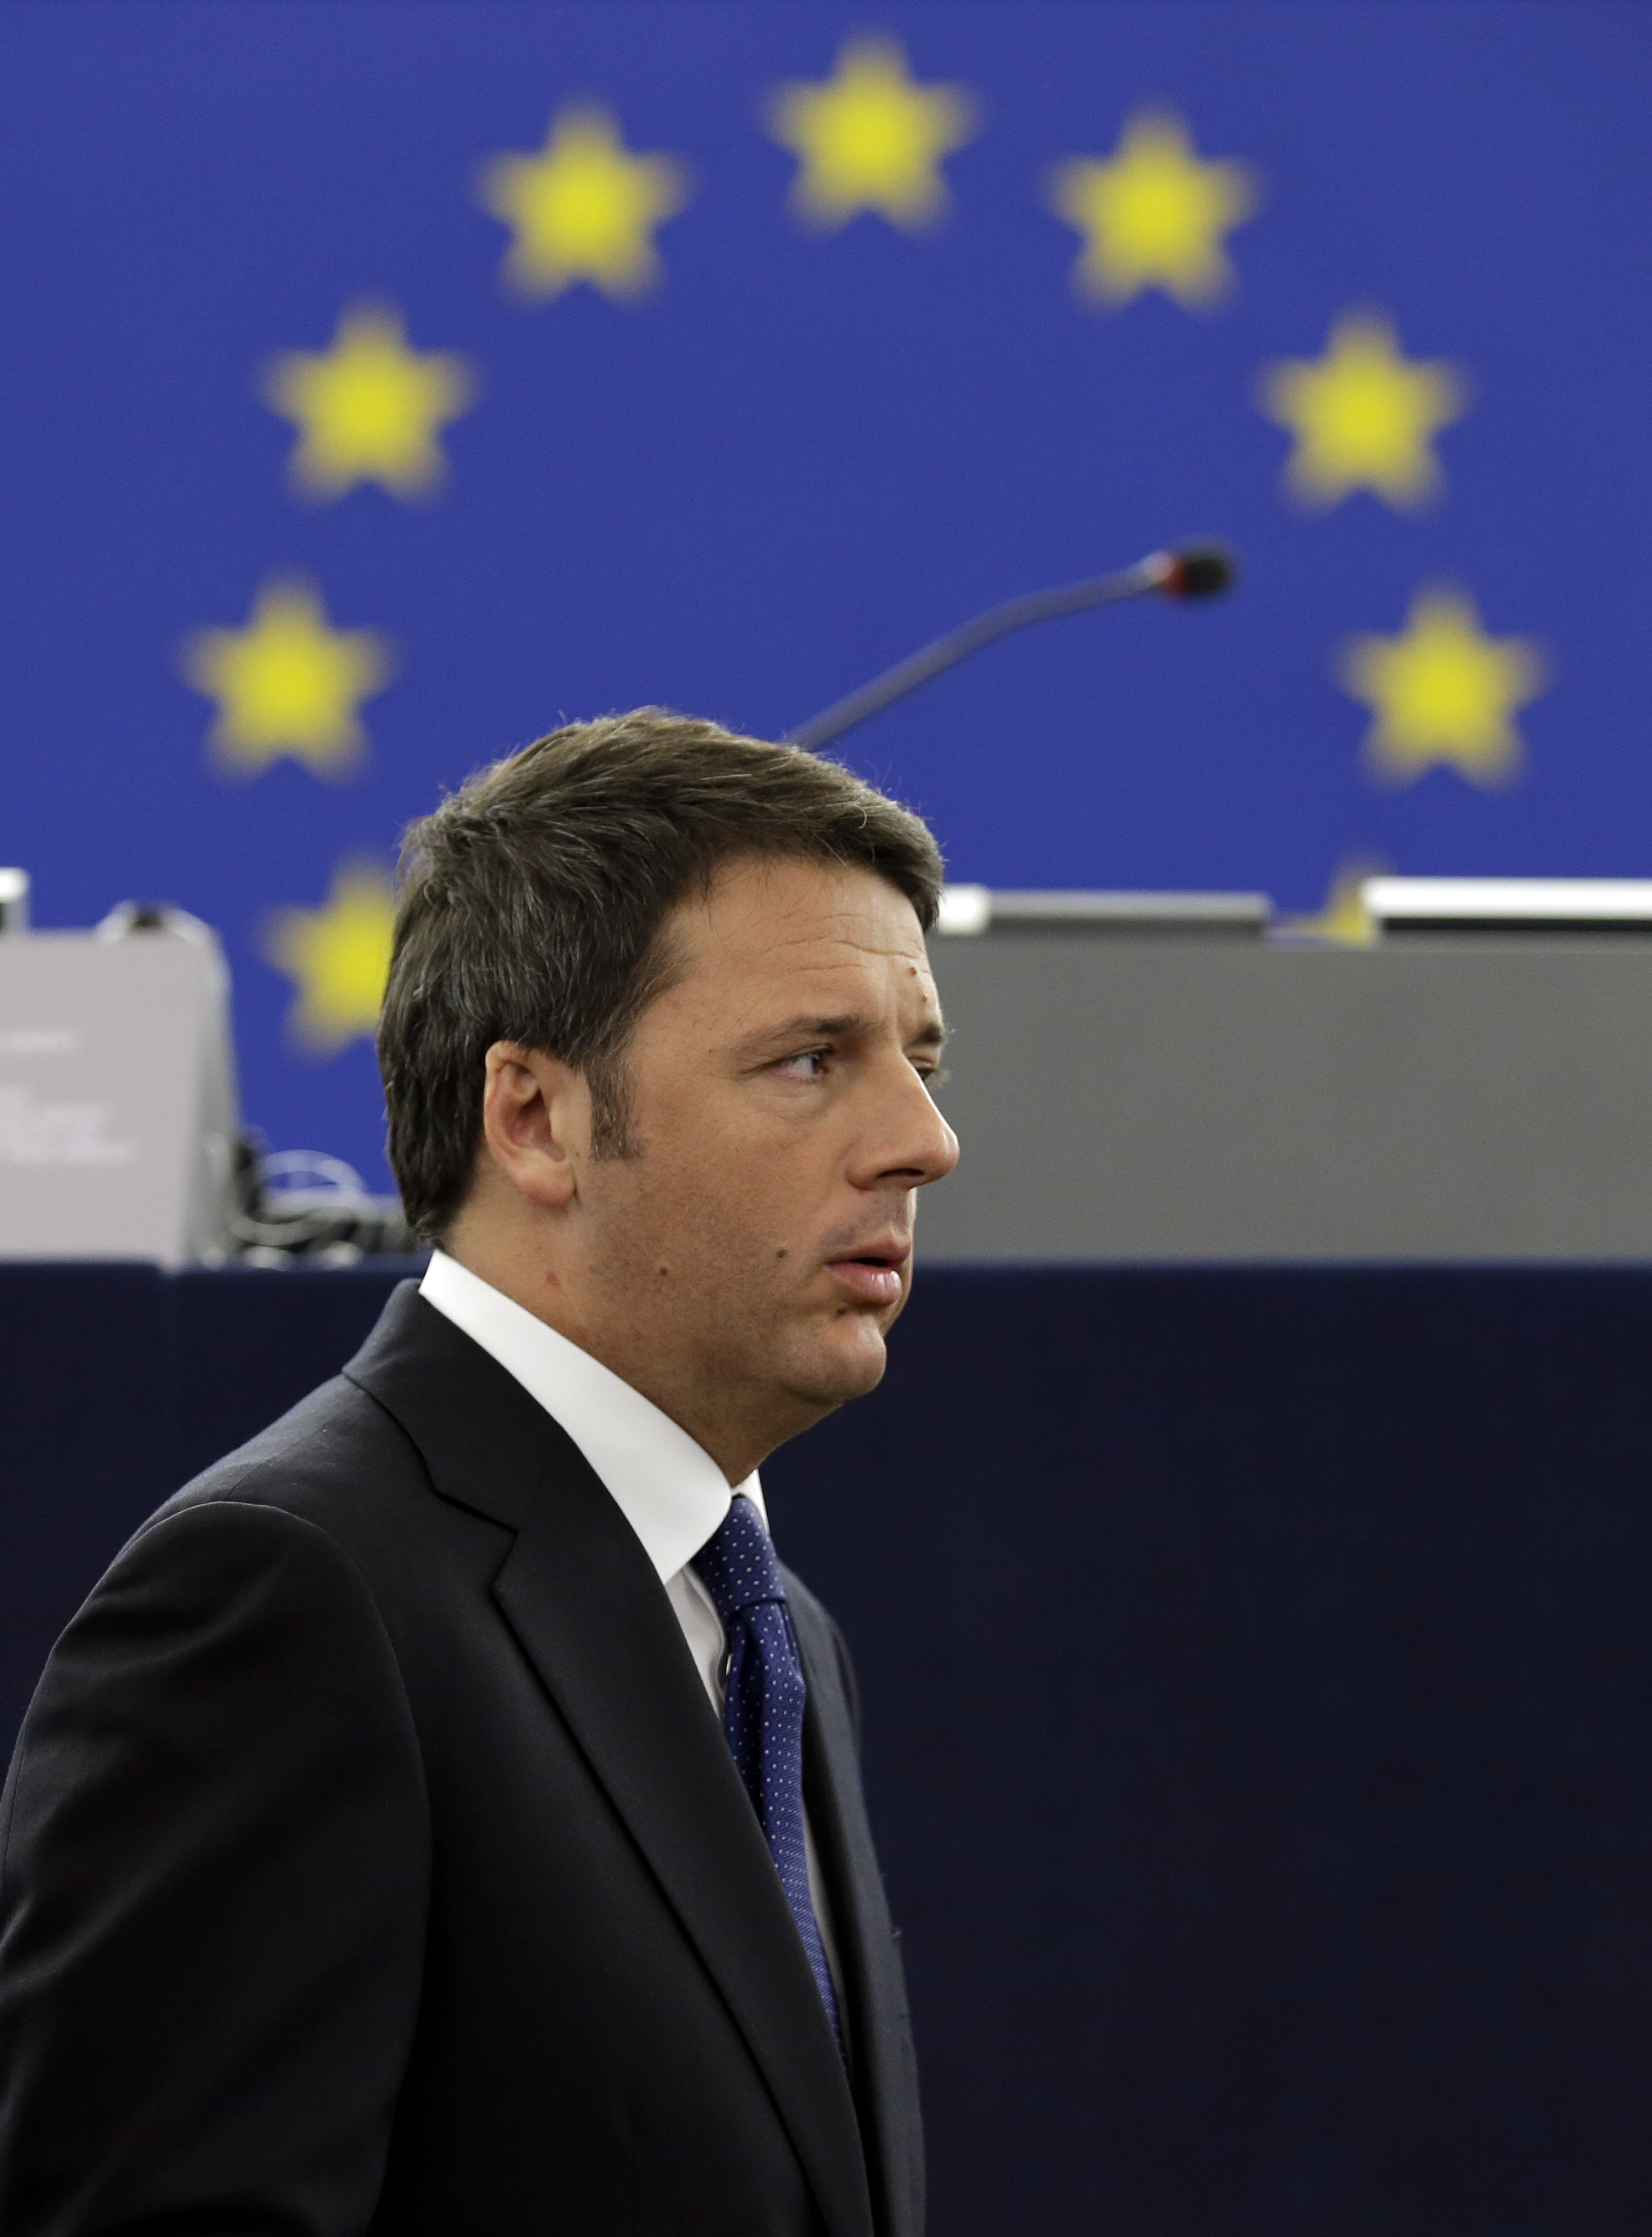 Νέα μέτρα κατά της διαφθοράς ανακοίνωσε ο Ματέο Ρέντσι